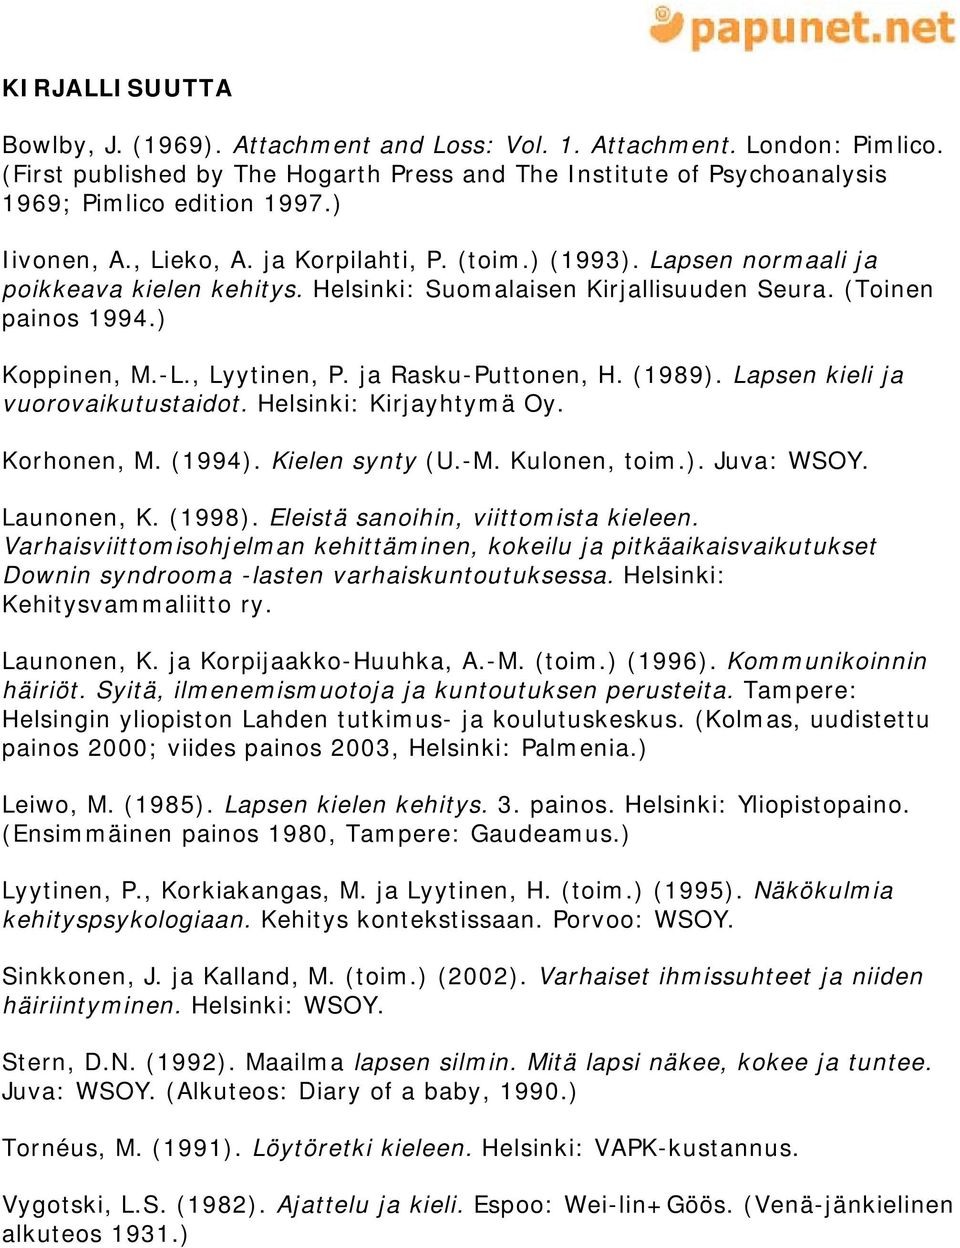 ja Rasku-Puttonen, H. (1989). Lapsen kieli ja vuorovaikutustaidot. Helsinki: Kirjayhtymä Oy. Korhonen, M. (1994). Kielen synty (U.-M. Kulonen, toim.). Juva: WSOY. Launonen, K. (1998).